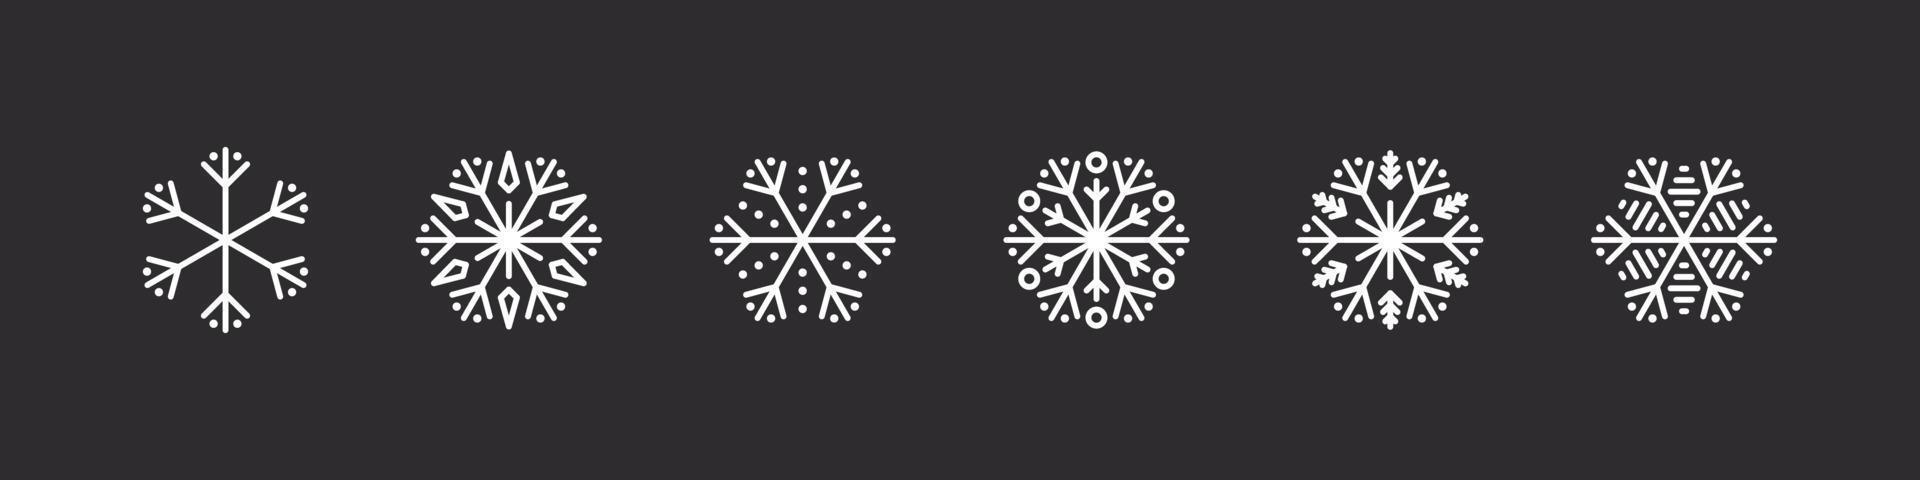 conjunto de copos de nieve. copos de nieve blancos sobre un fondo oscuro. signos de navidad. bellamente copos de nieve. ilustración vectorial vector